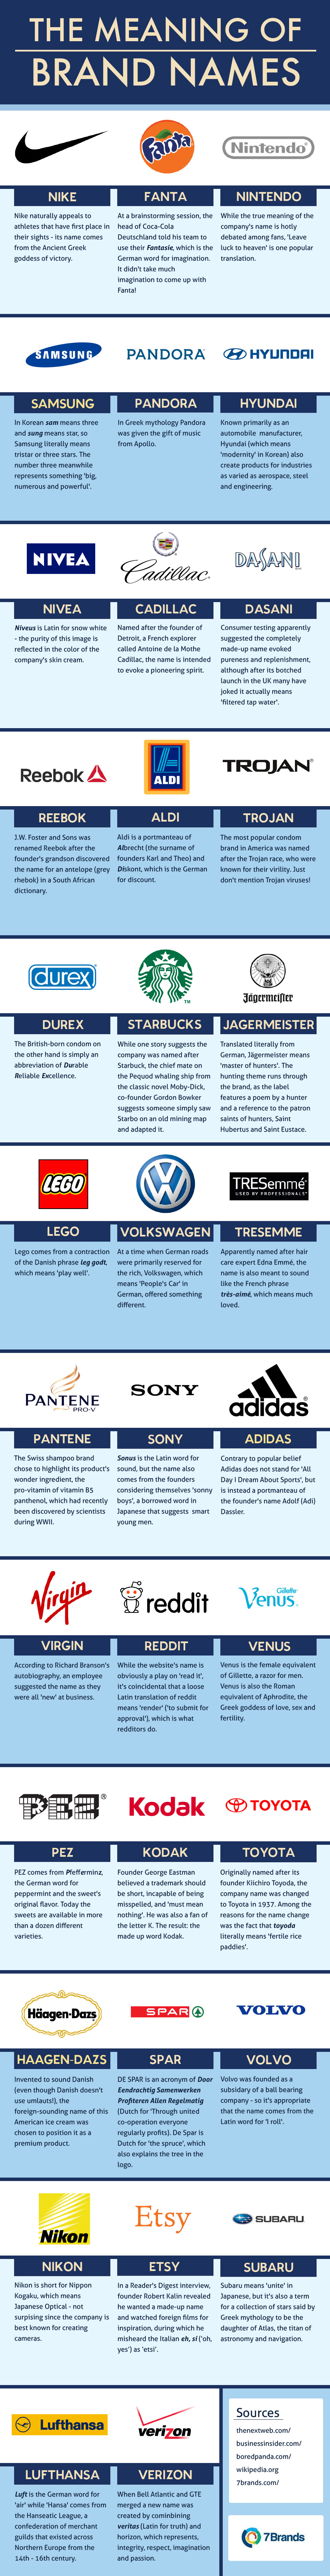 significados de los nombres de marcas famosas_unpocogeek.com